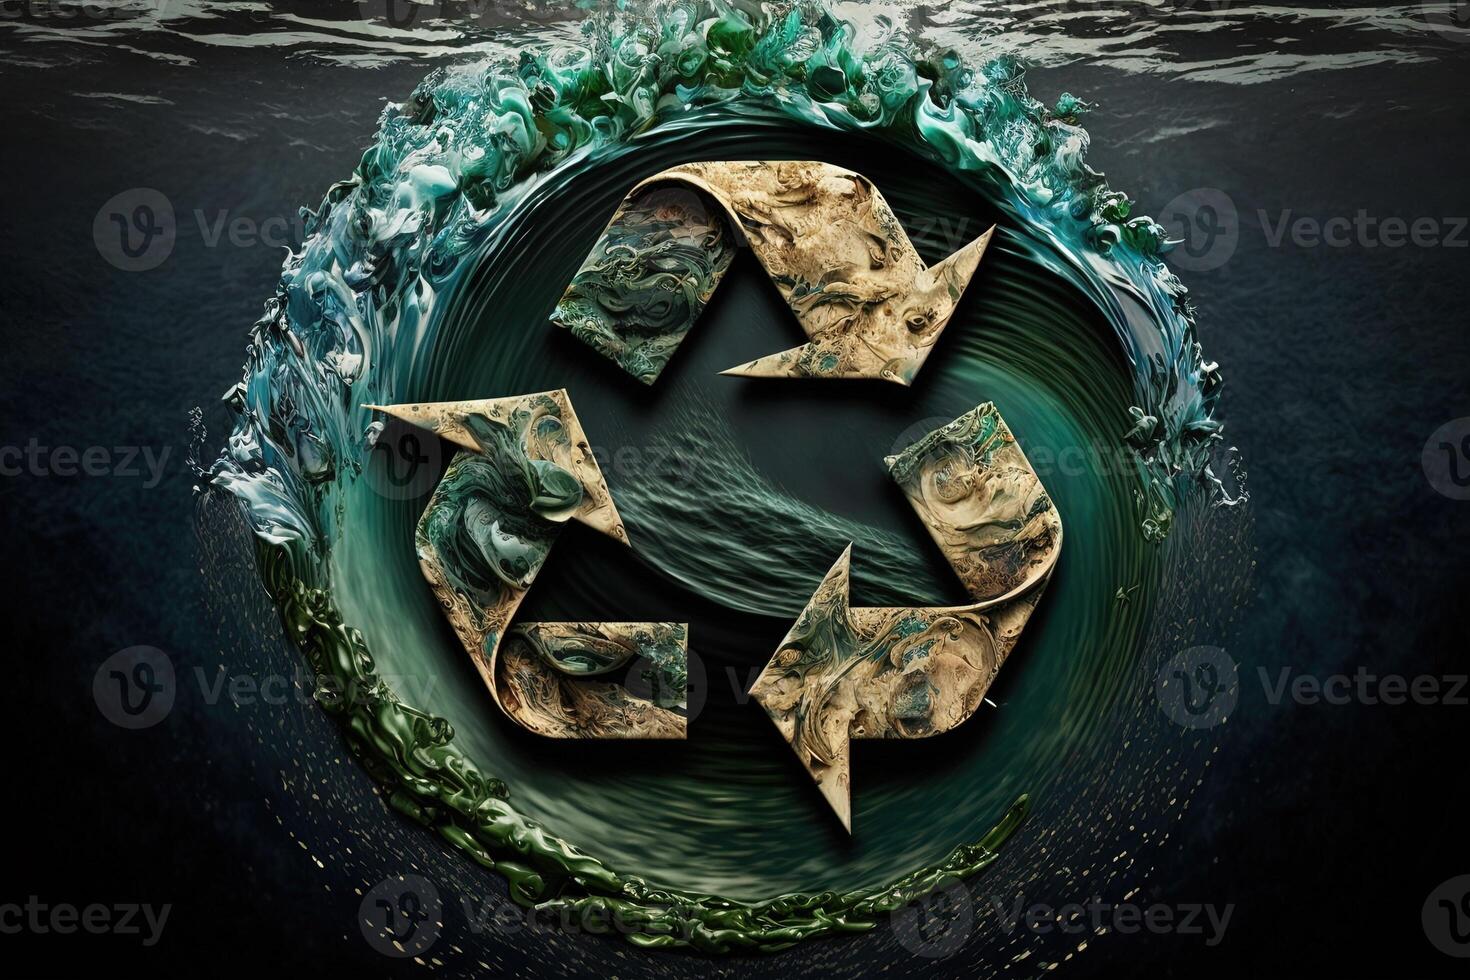 recycle symbool in de oceaan. generatief ai groen energie concept, Nee meer uitschot en plastic in zee. opslaan de oceaan van afval. beschermen de oceanen en zeeën. eco macht foto